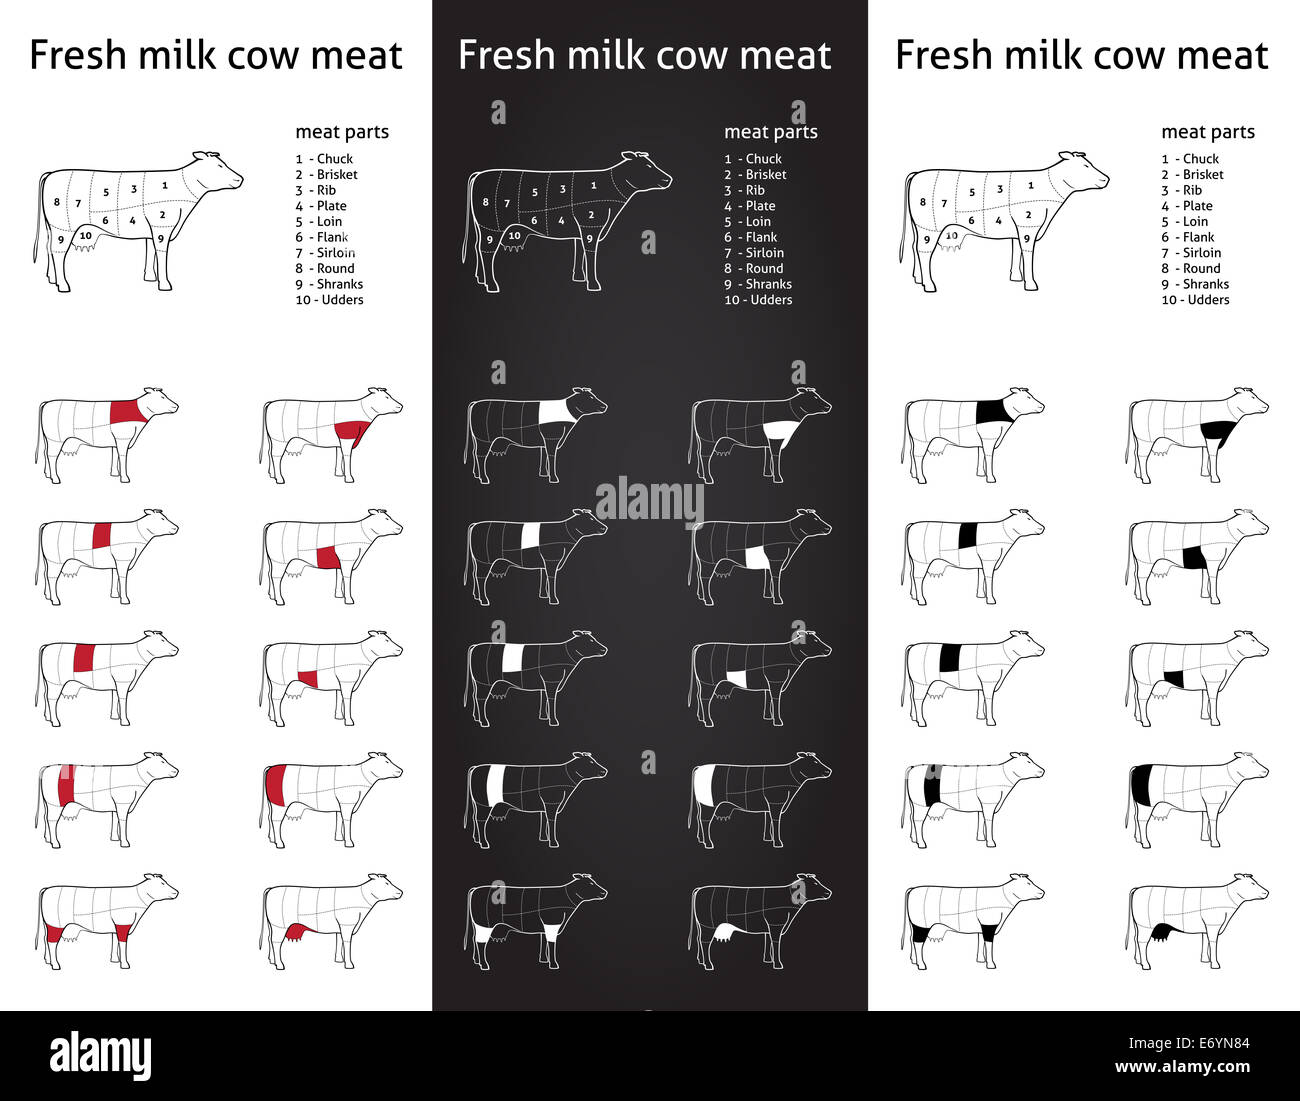 Icon-set Bauernhof frische Milch Kuh (Rind) Fleischteile für Verpackungen und Info-Grafik in drei Versionen Stockfoto